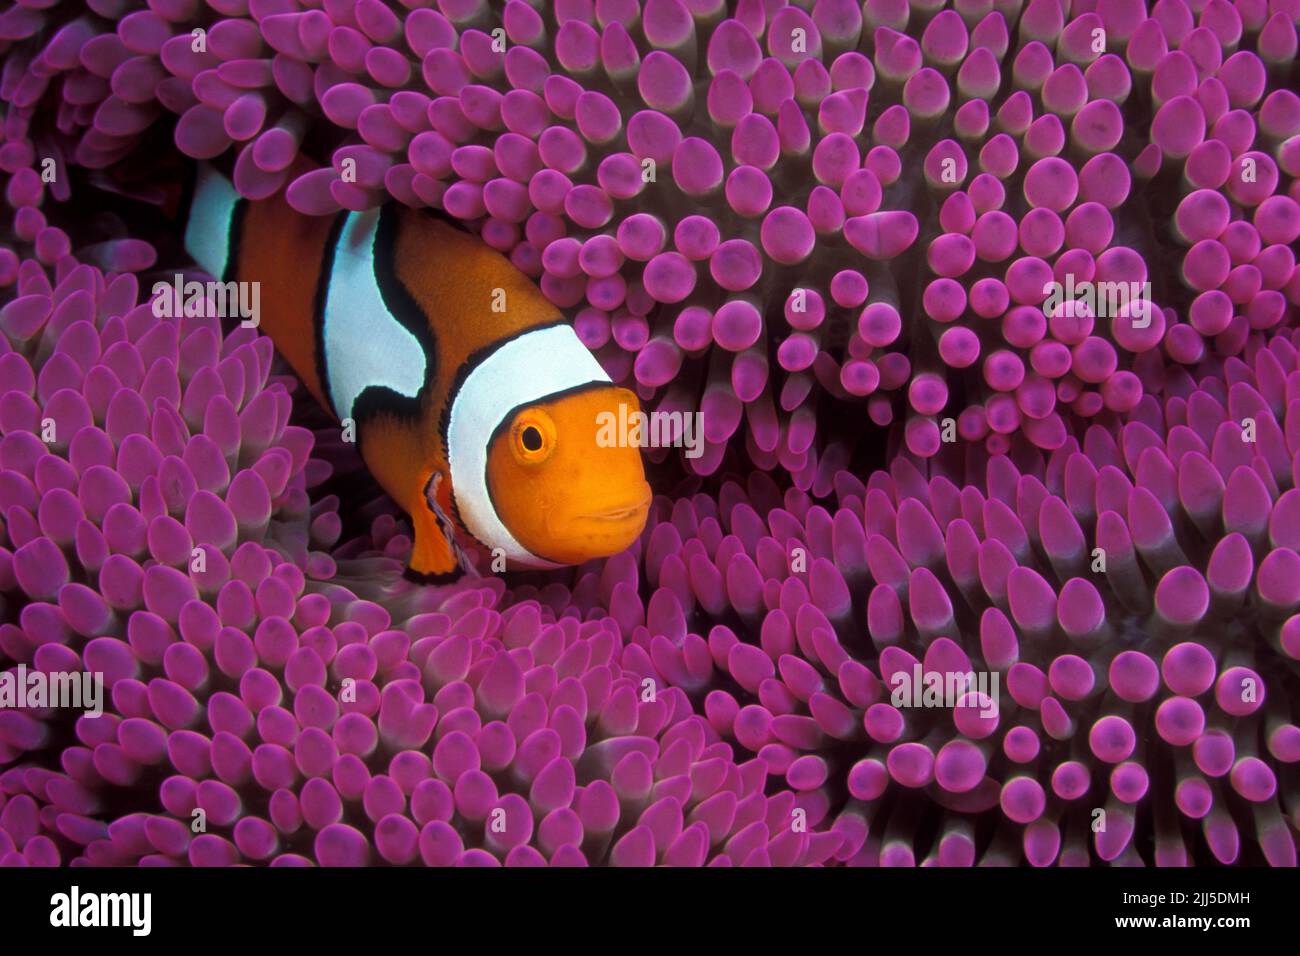 Il pesce pagliaccio di Percula (anfibprion percula), noto anche come pesce pagliaccio arancione, vive in simbiosi con anemoni marini, Thailandia, Mare delle Andamane, Asia Foto Stock